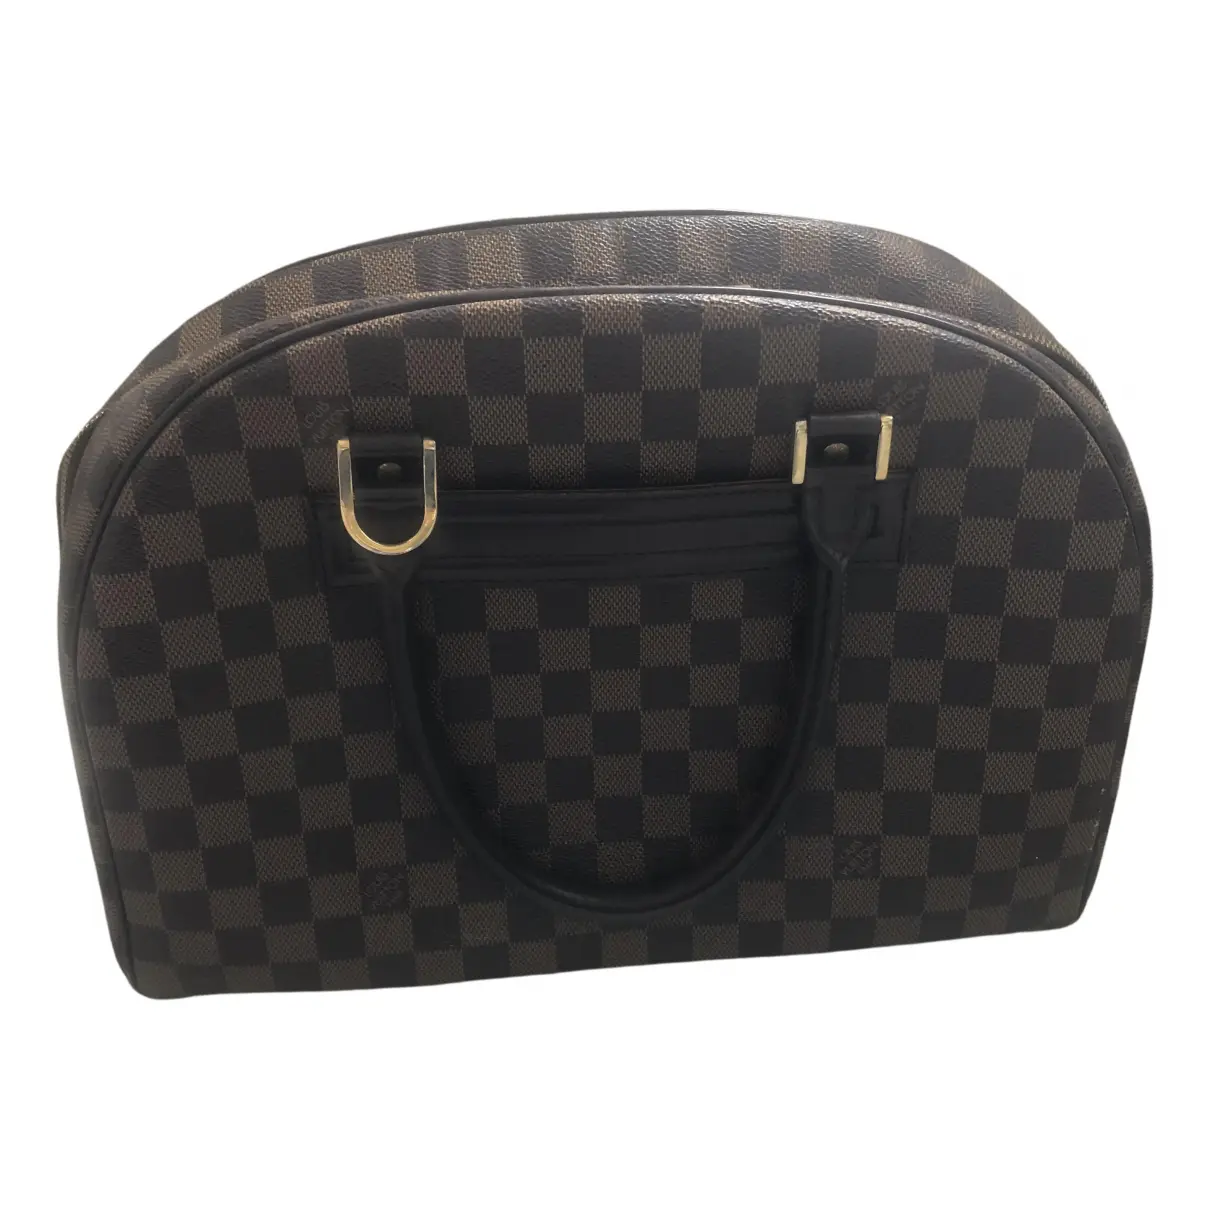 Nolita cloth handbag Louis Vuitton